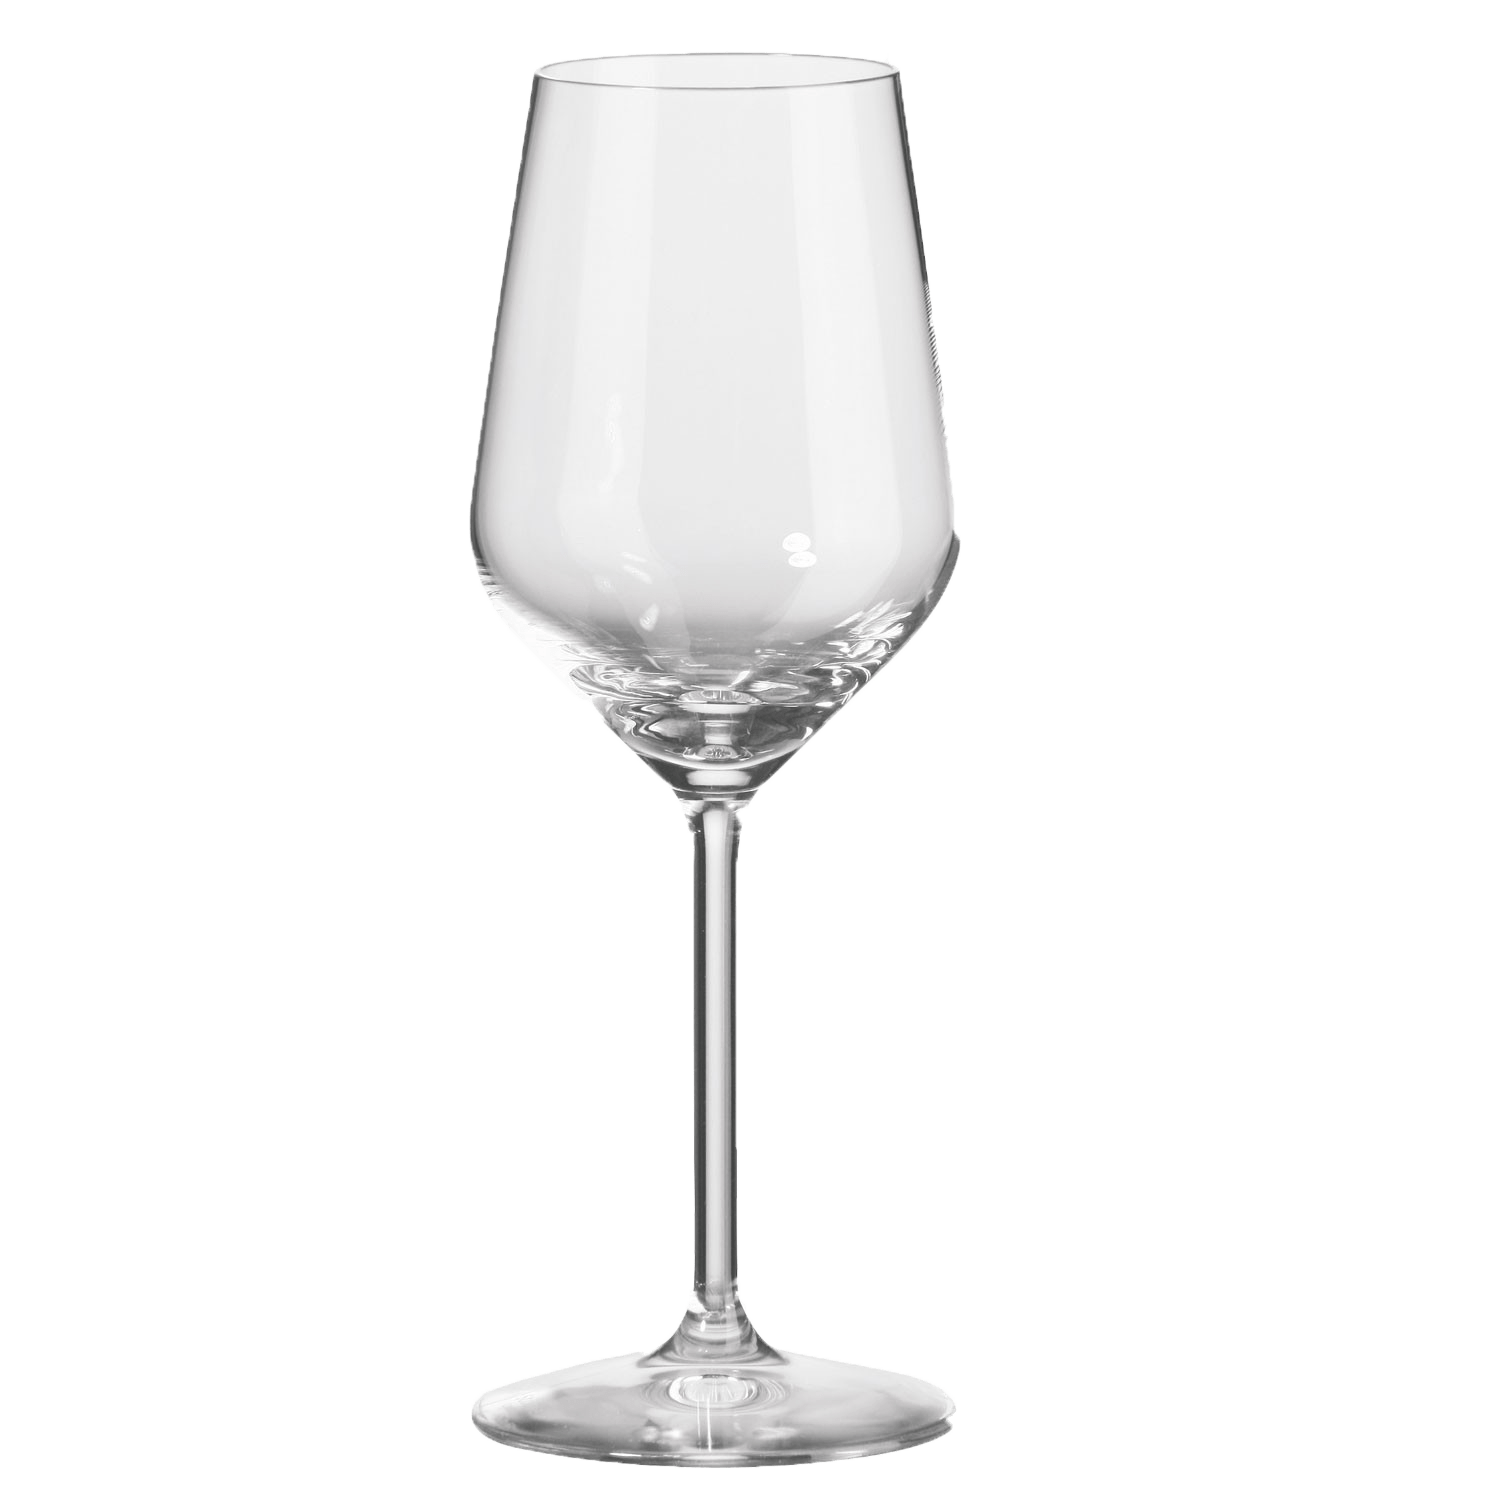 wijnglas-klein-2.png